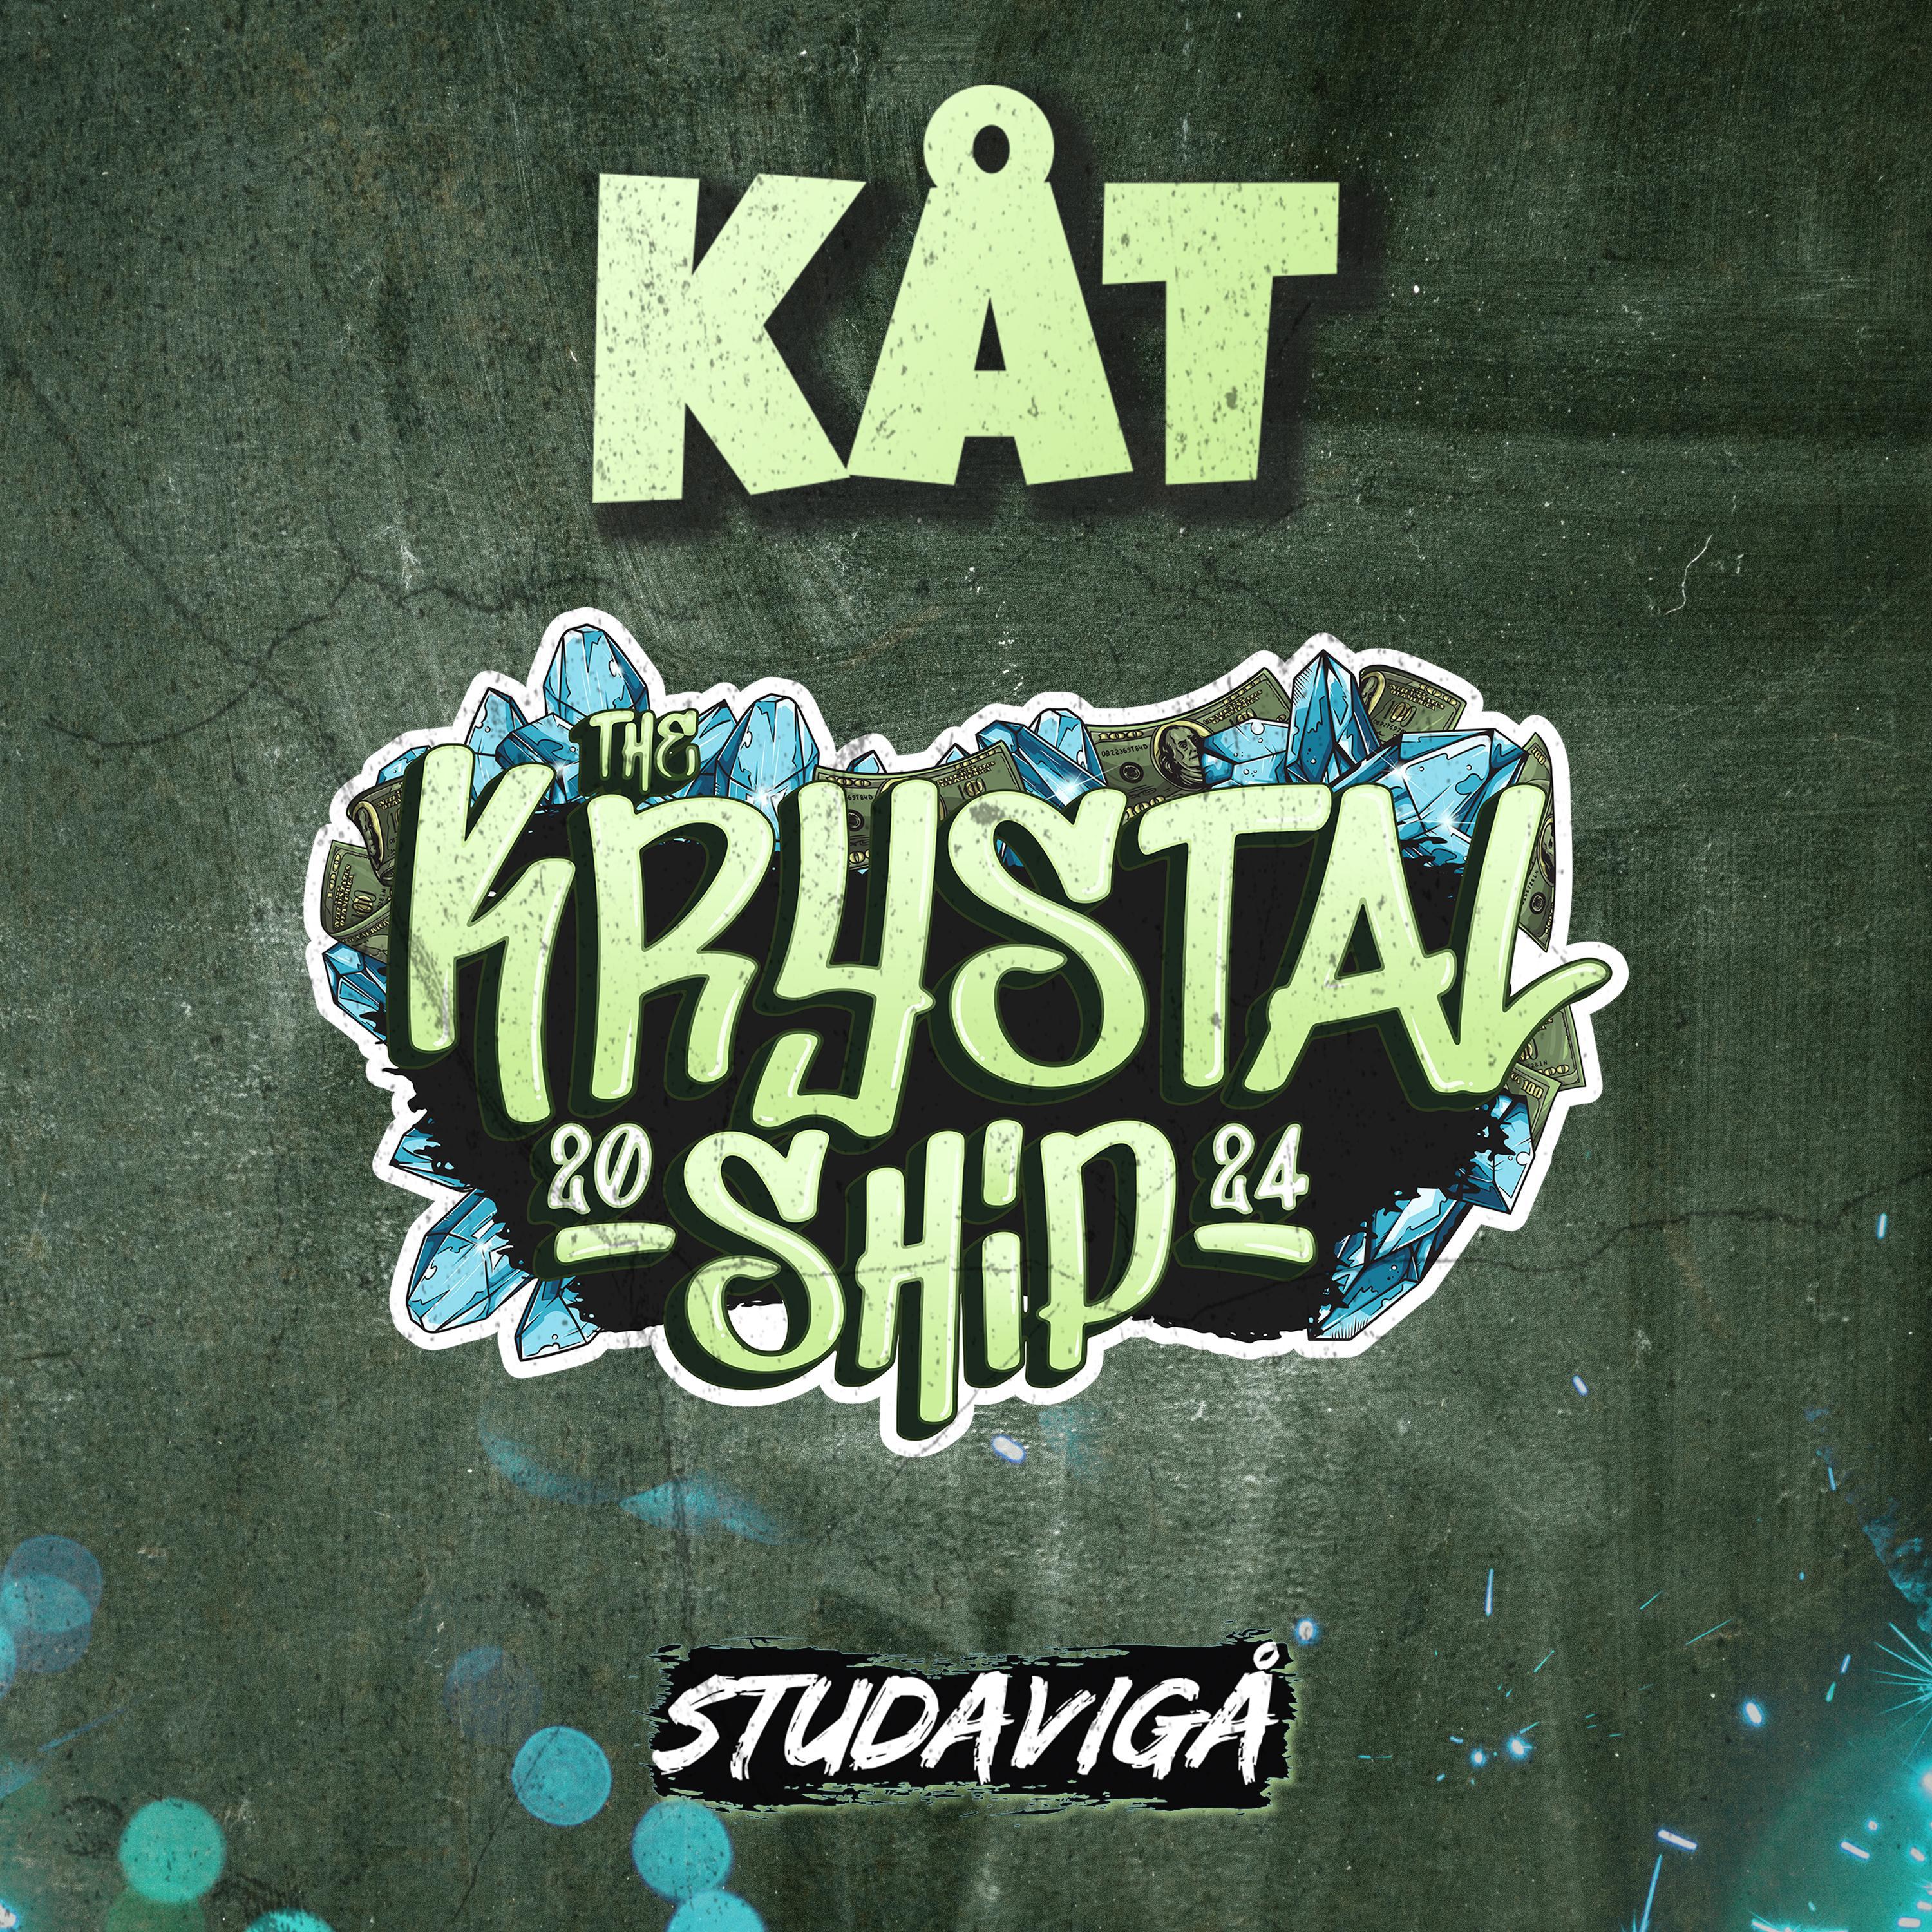 Studavigå - Kåt (The Krystal Ship)